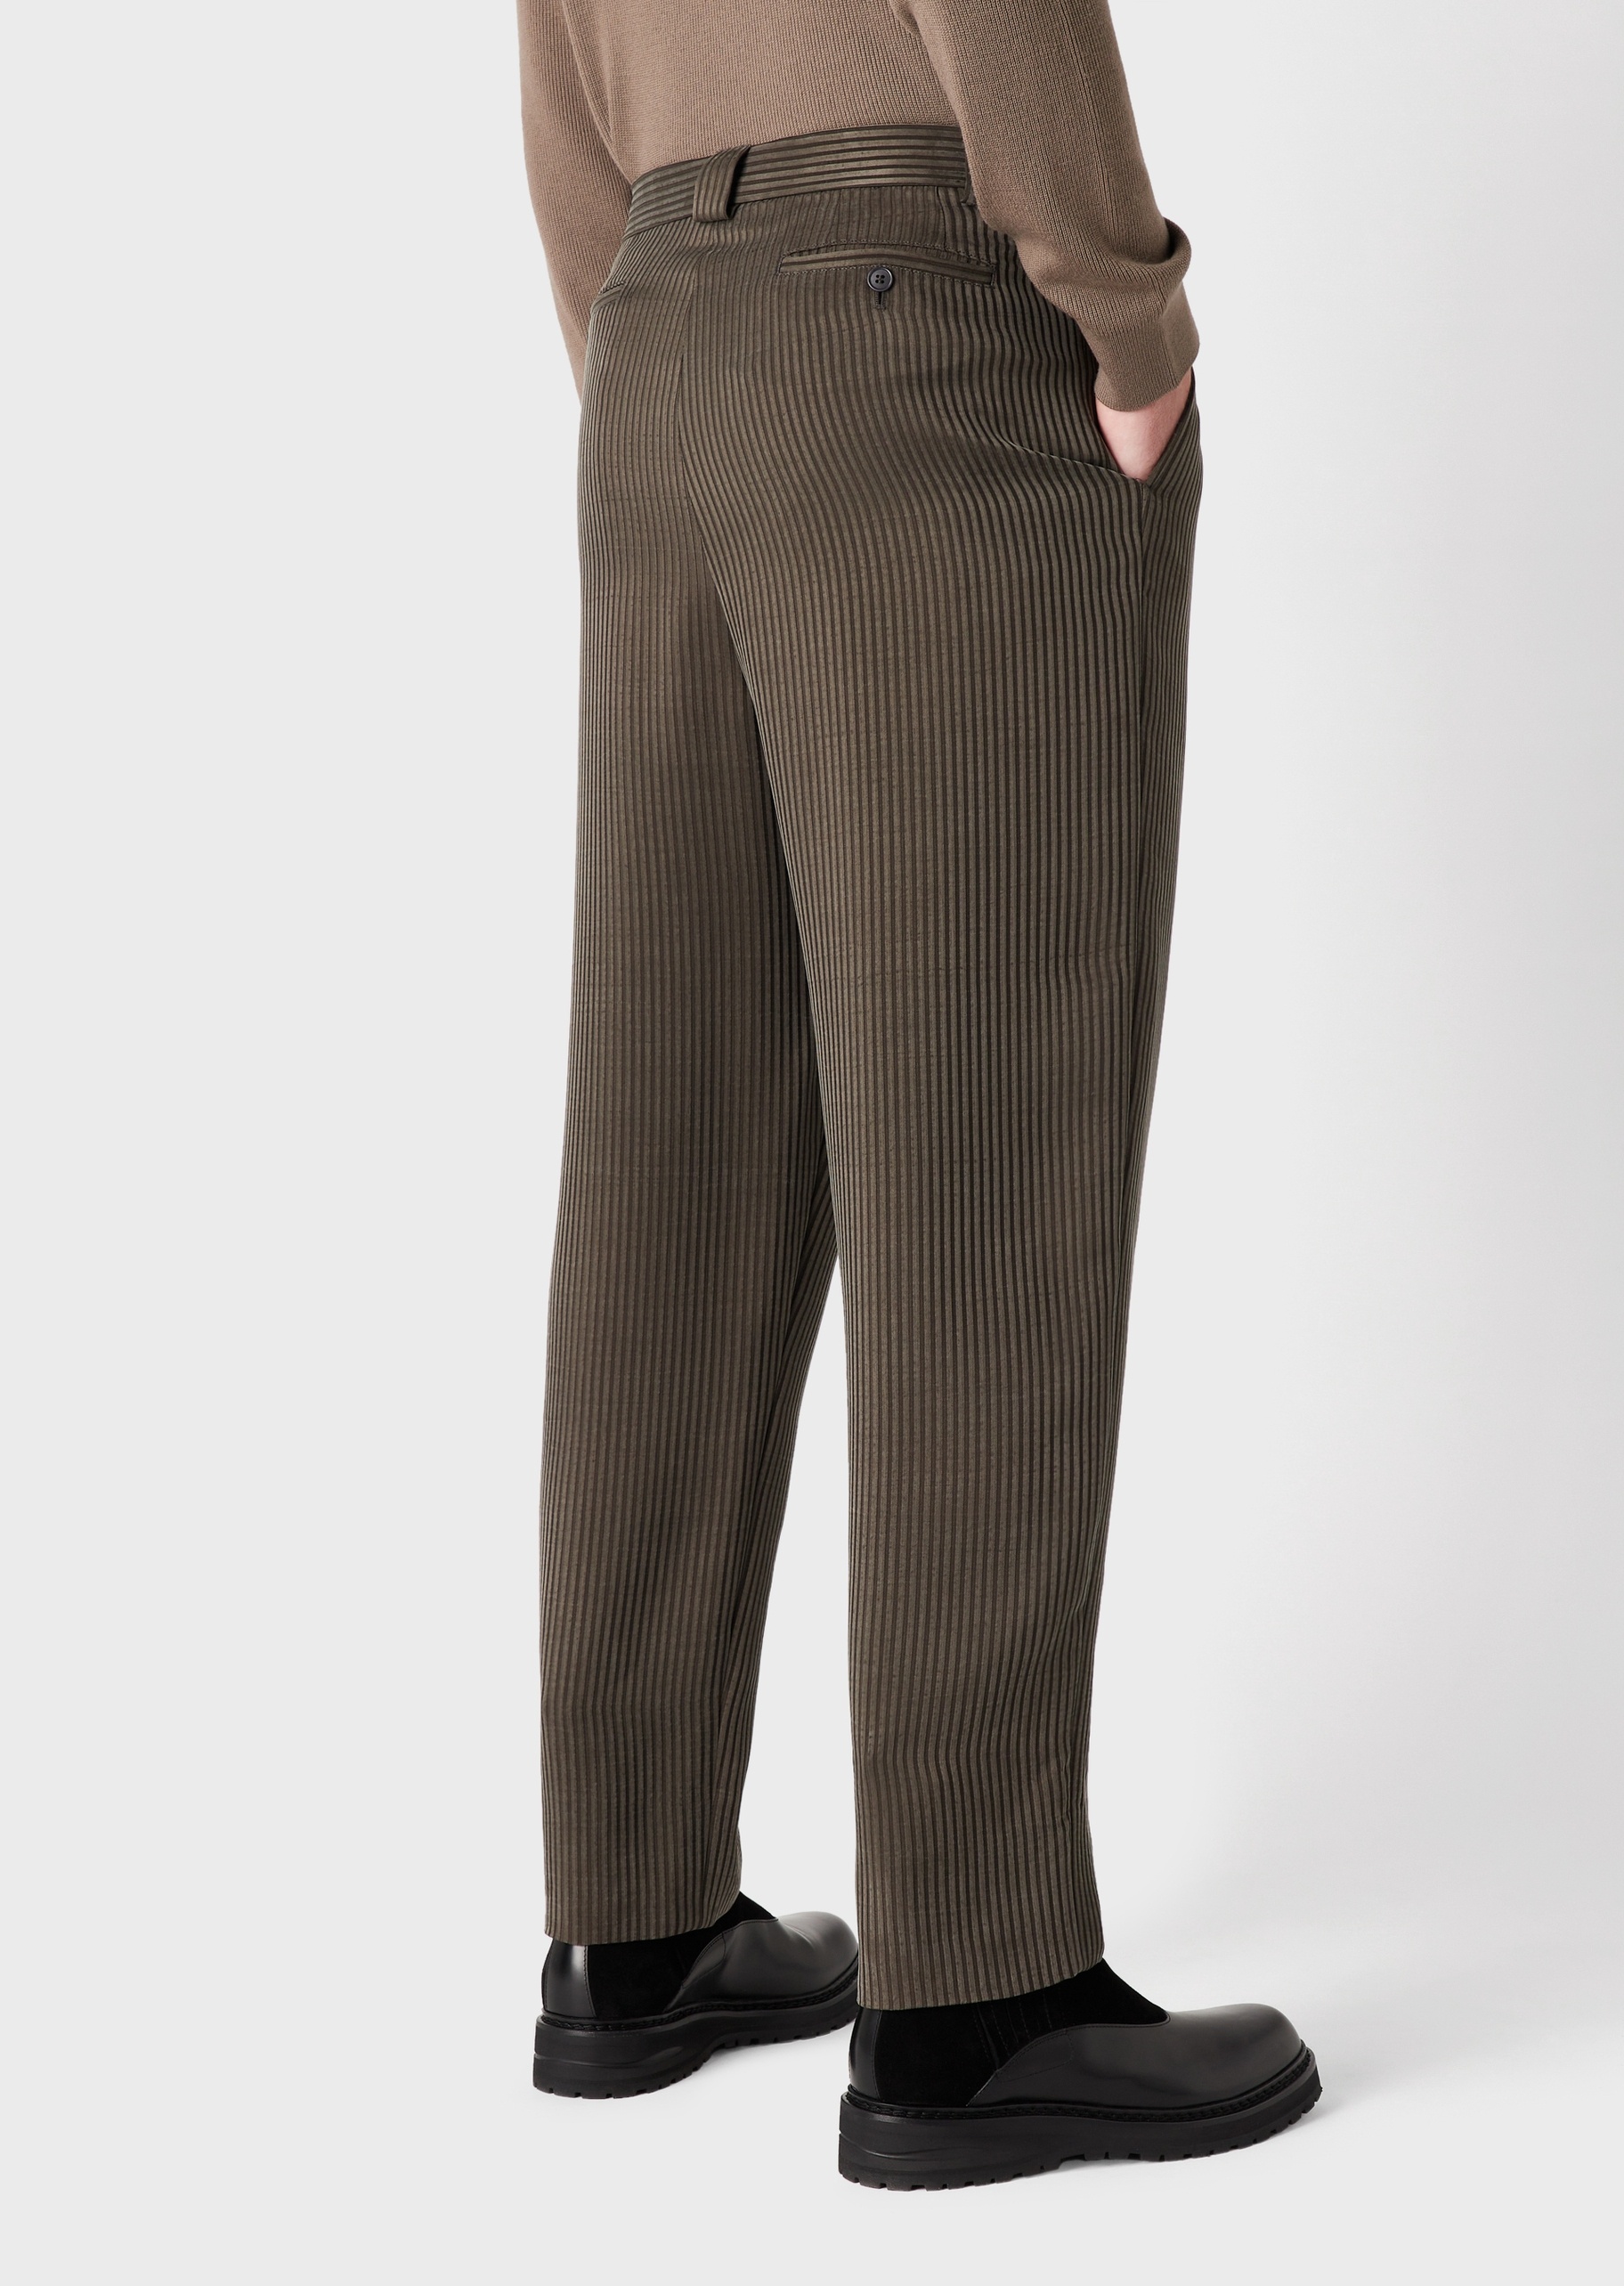 Giorgio Armani 男士复古半活褶宽松直筒细条纹休闲裤